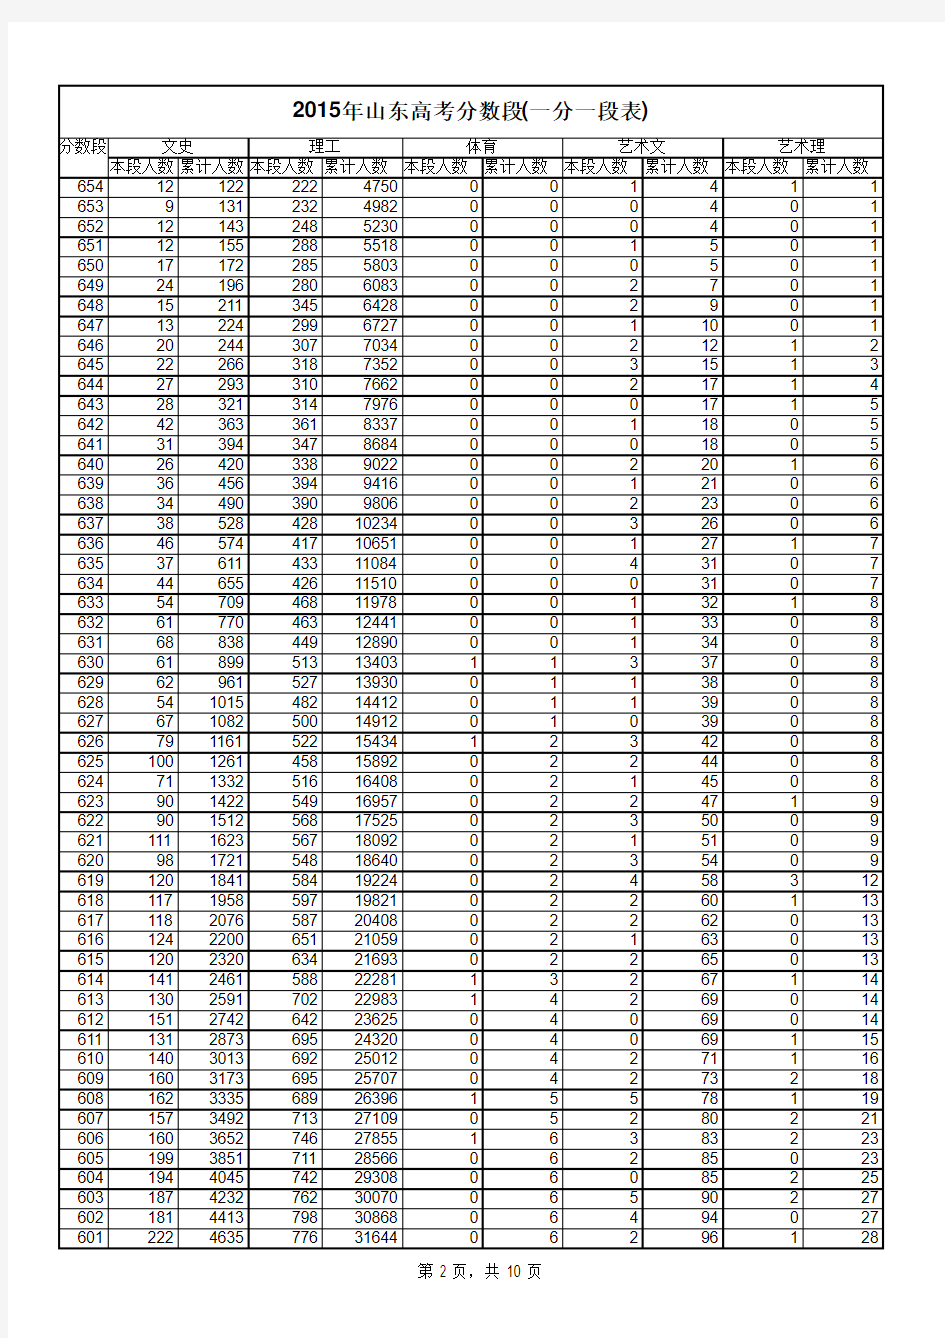 2015年山东高考分数段(一分一段表)